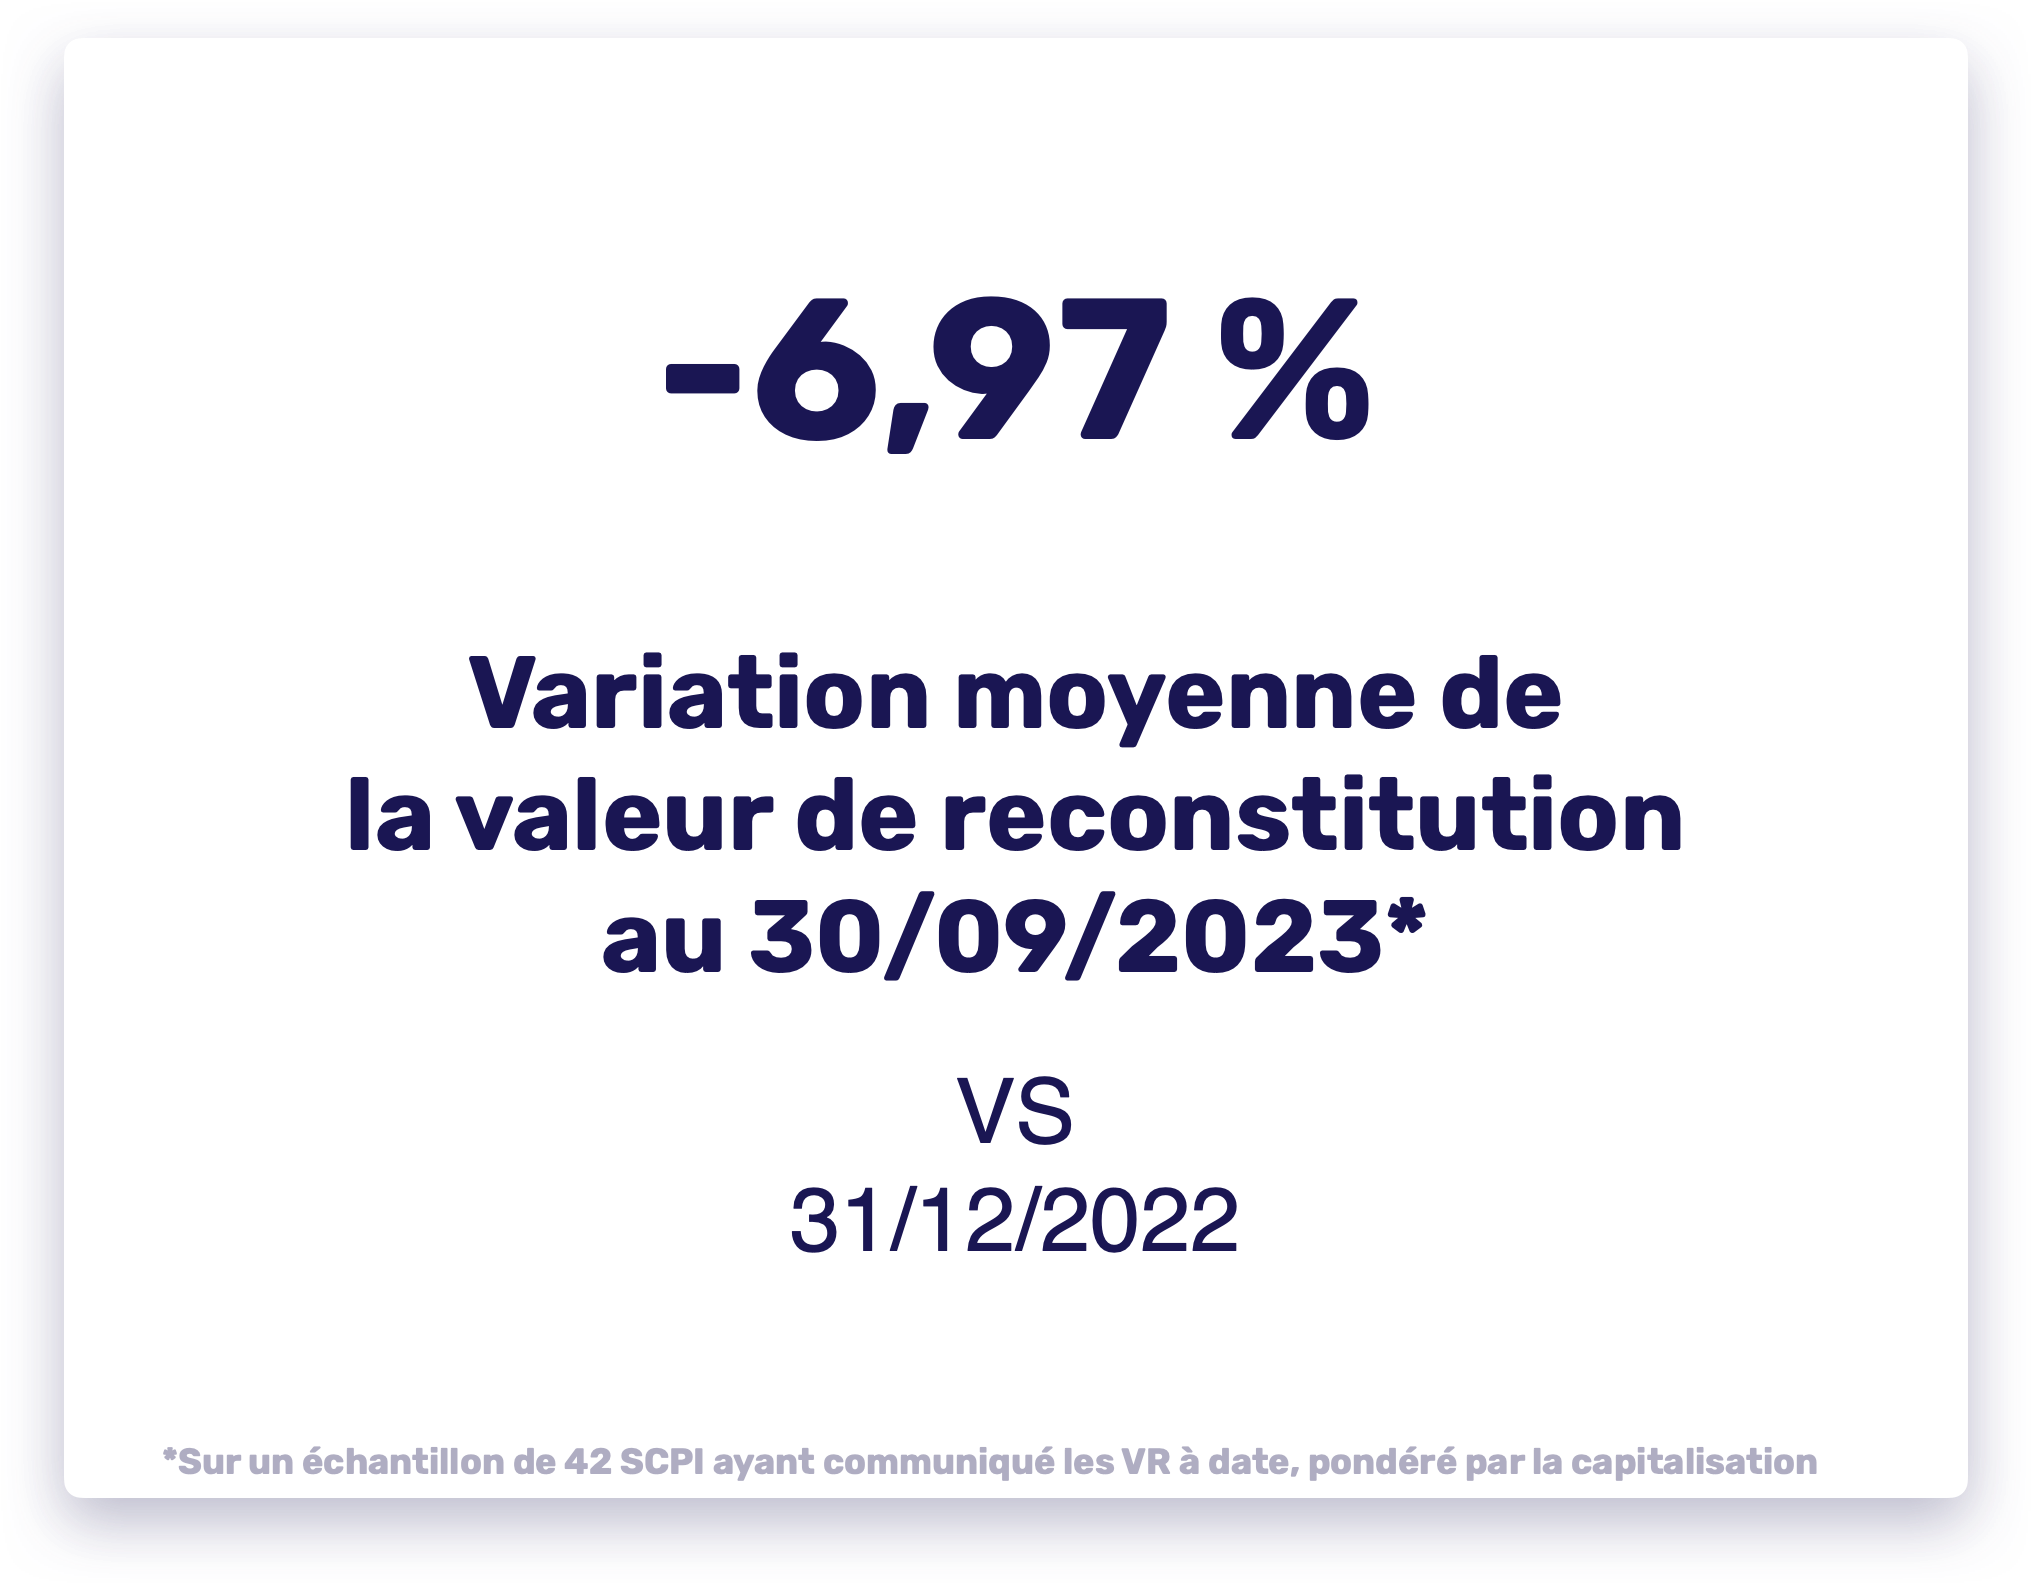 -6,97% : variation moyenne de la valeur de reconstitution des parts de SCPI au 30/09/2023